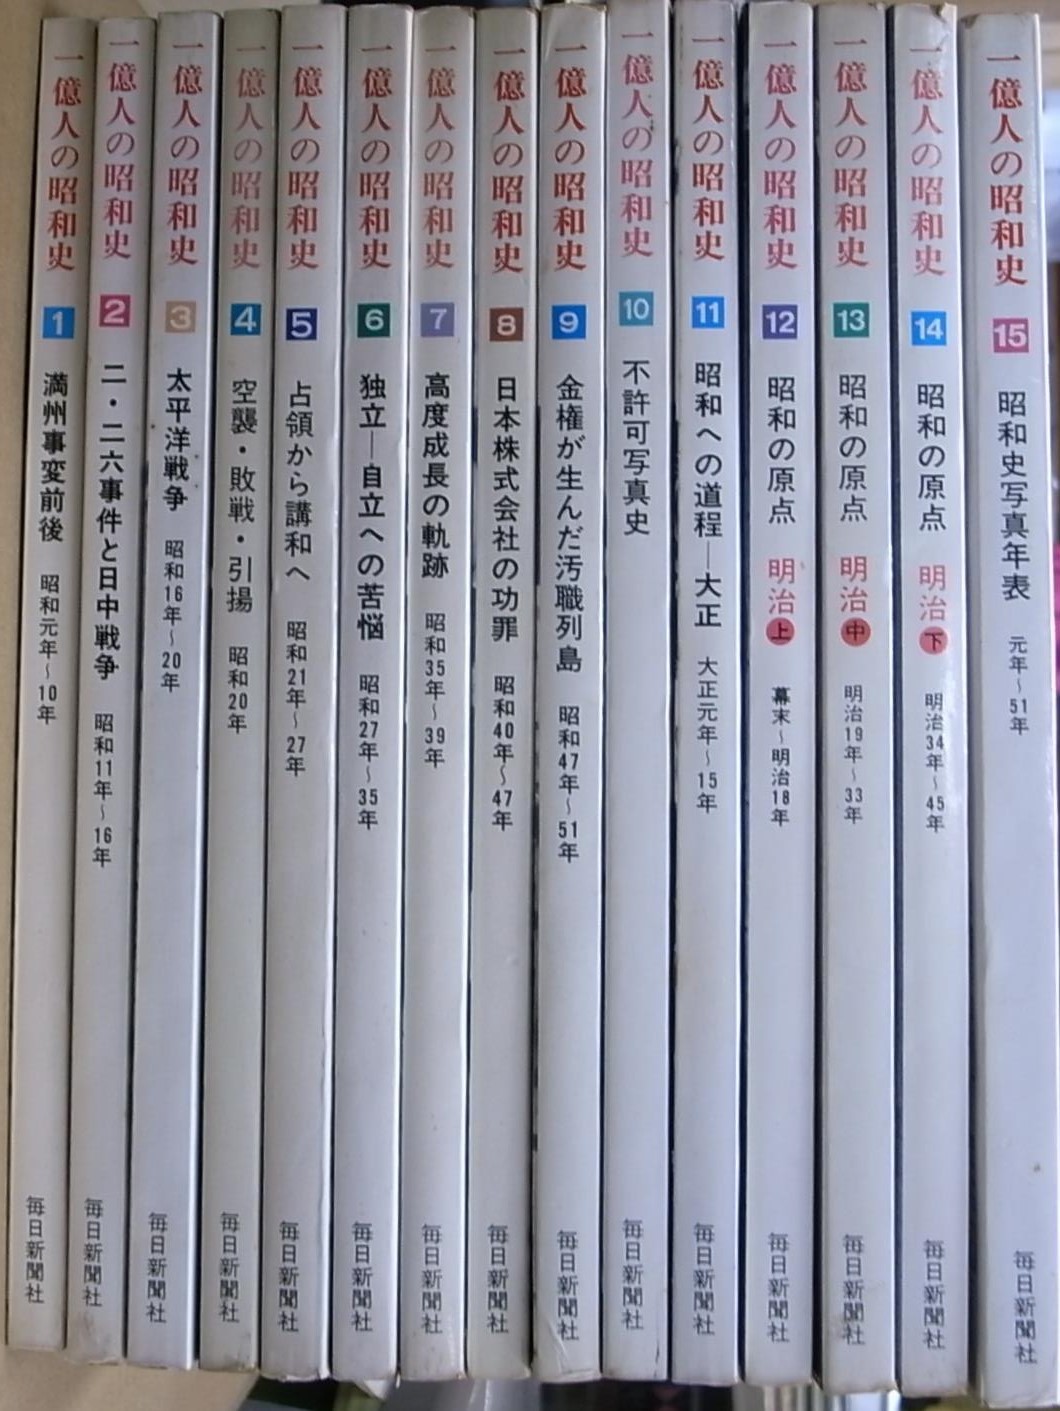 1億人の昭和史 全15冊揃 | 古本よみた屋 おじいさんの本、買います。